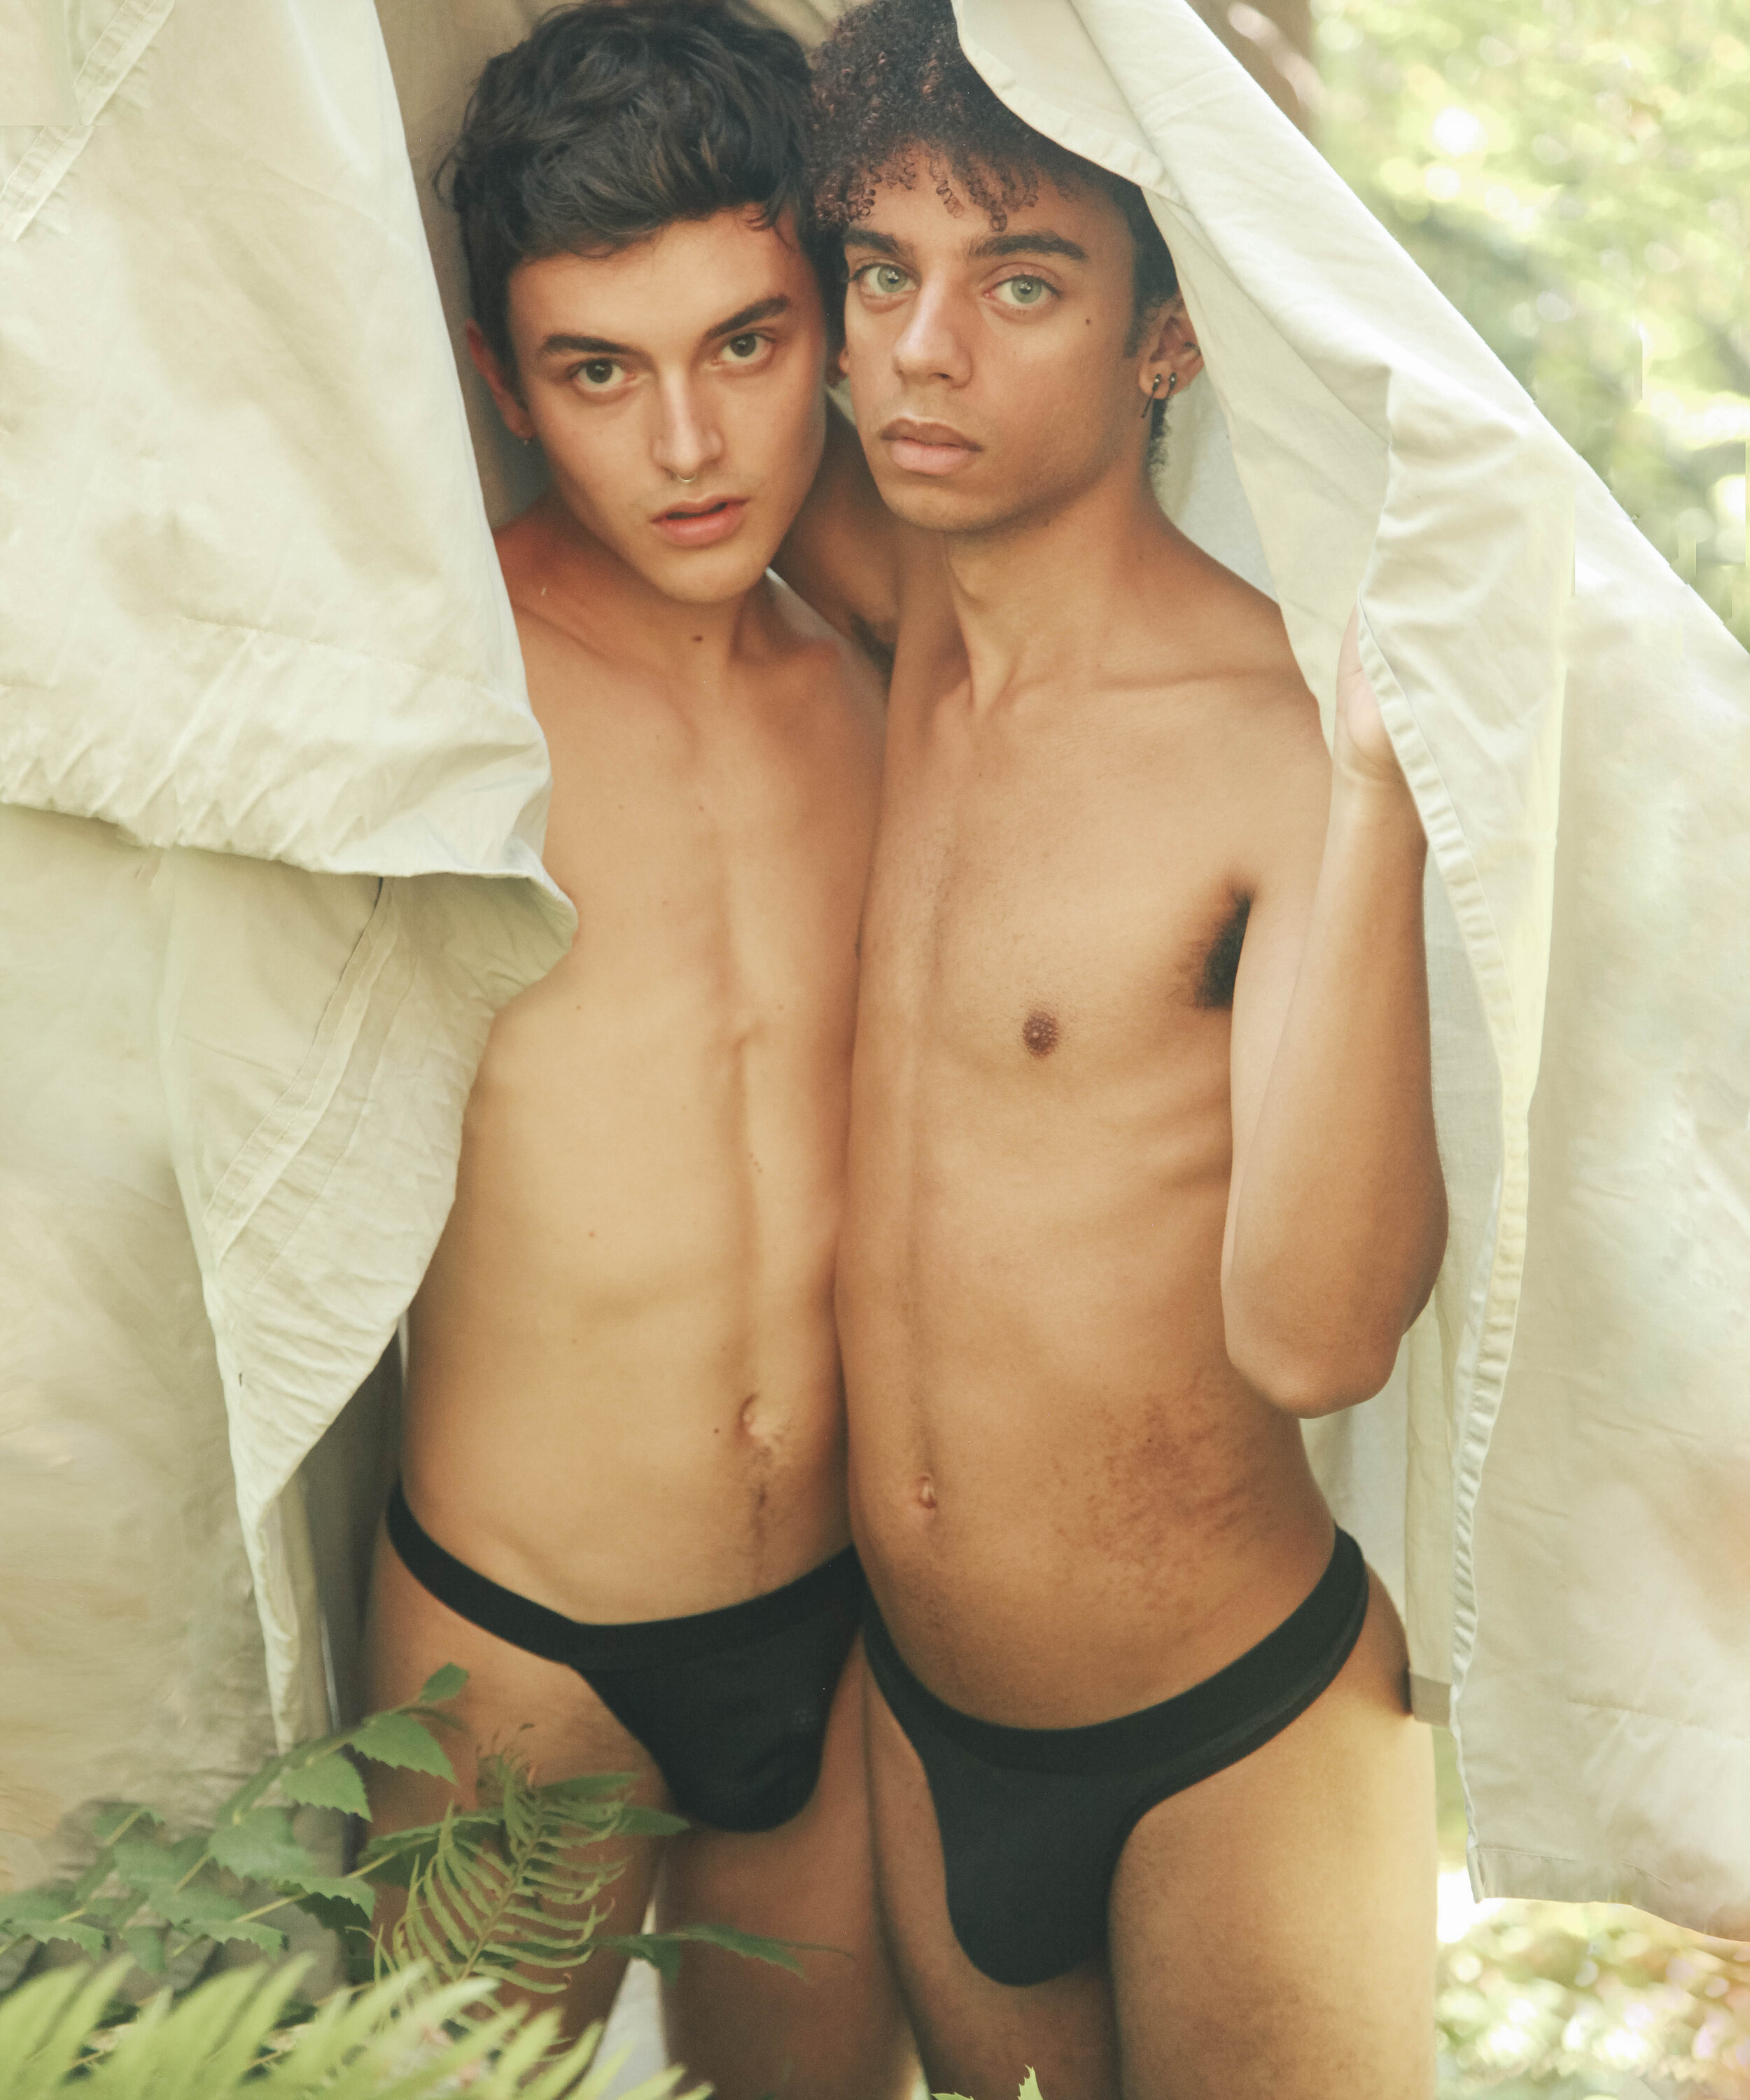 Lost-Boy-Underwear-Two-Ruffles-6-2020.jpg